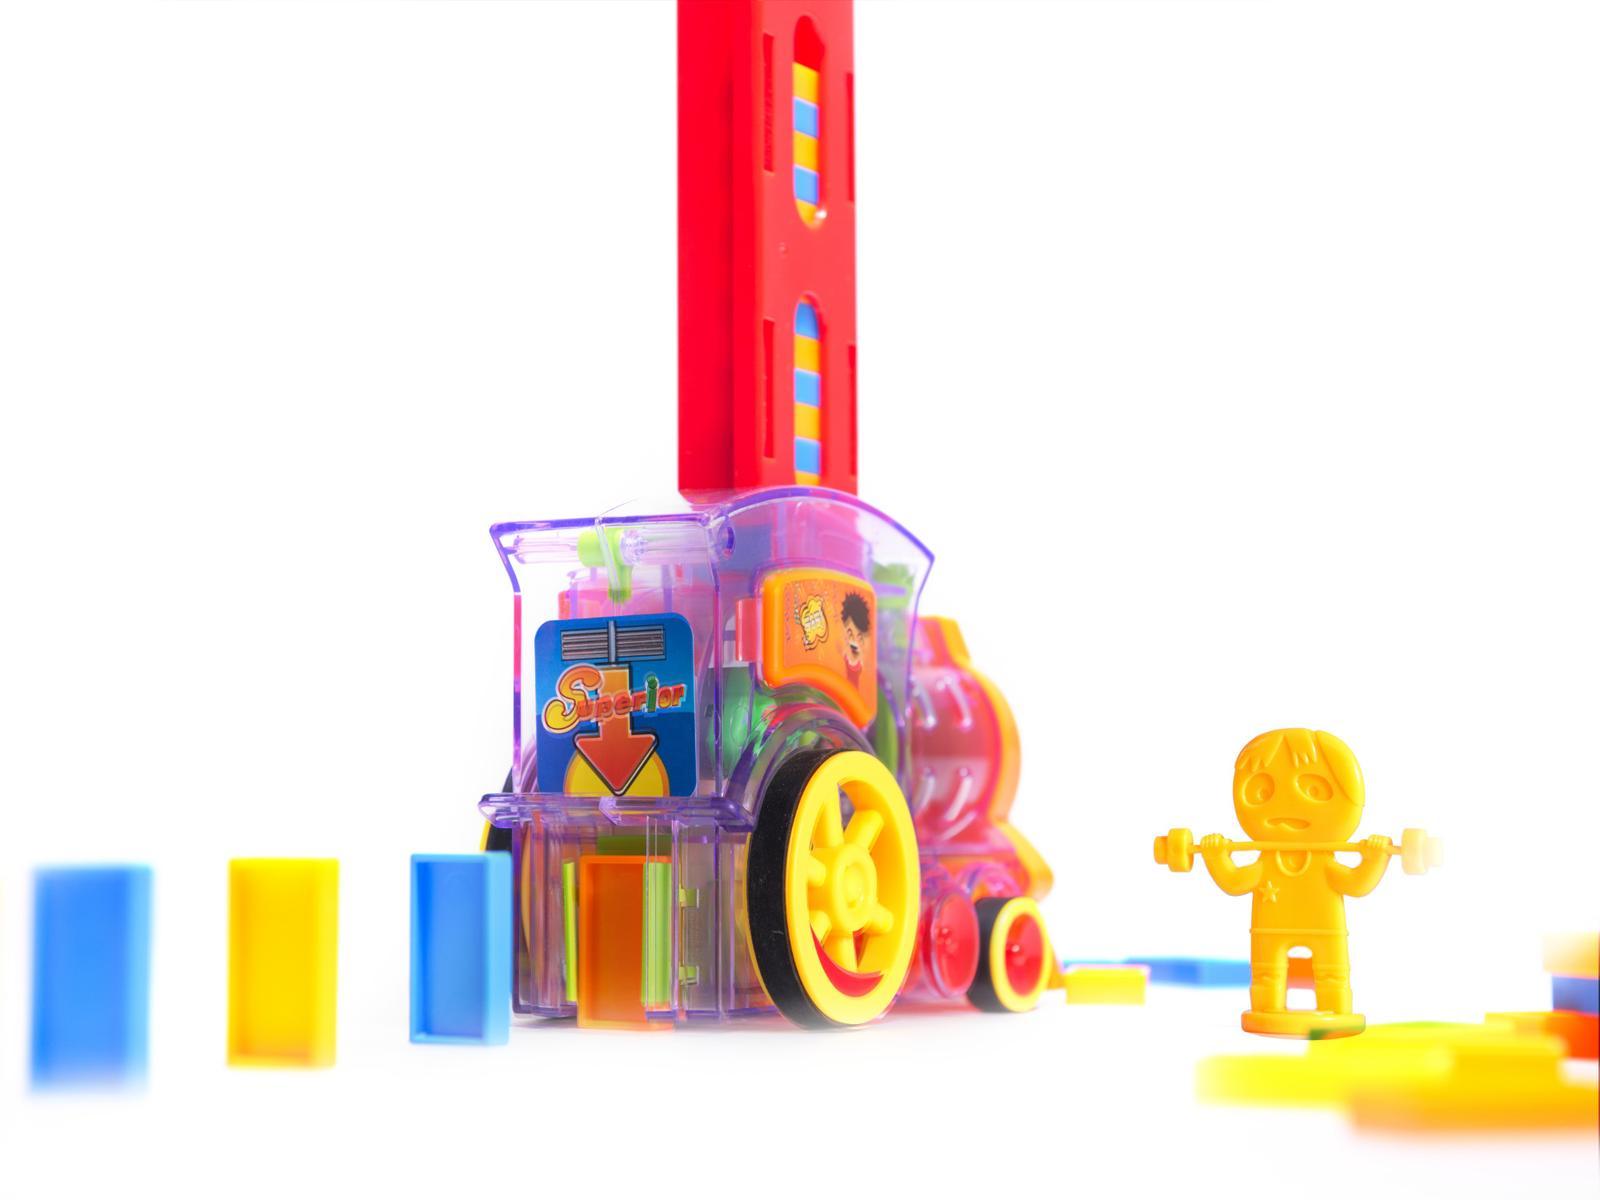 Pociąg Lokomotywa interaktywna układanka domino z kolejką zabawka dla dzieci 16x7x10 cm nr. 11